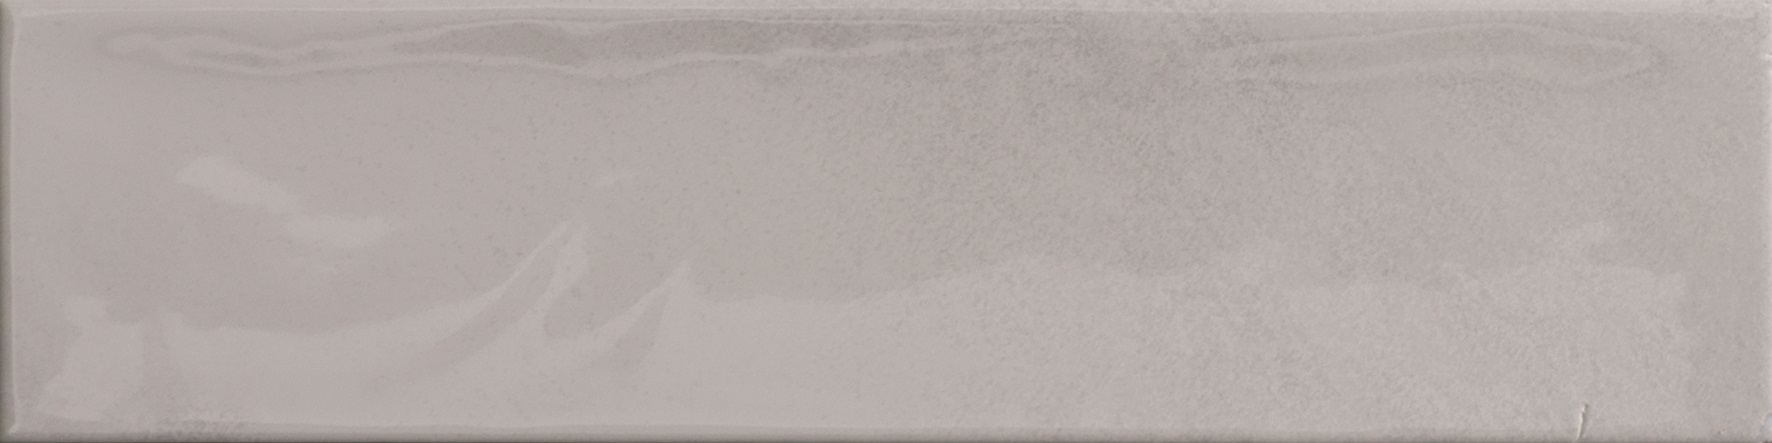 Catalea Gres Timra Metrofliesen Weiß glänzend 7,5x30 cm 